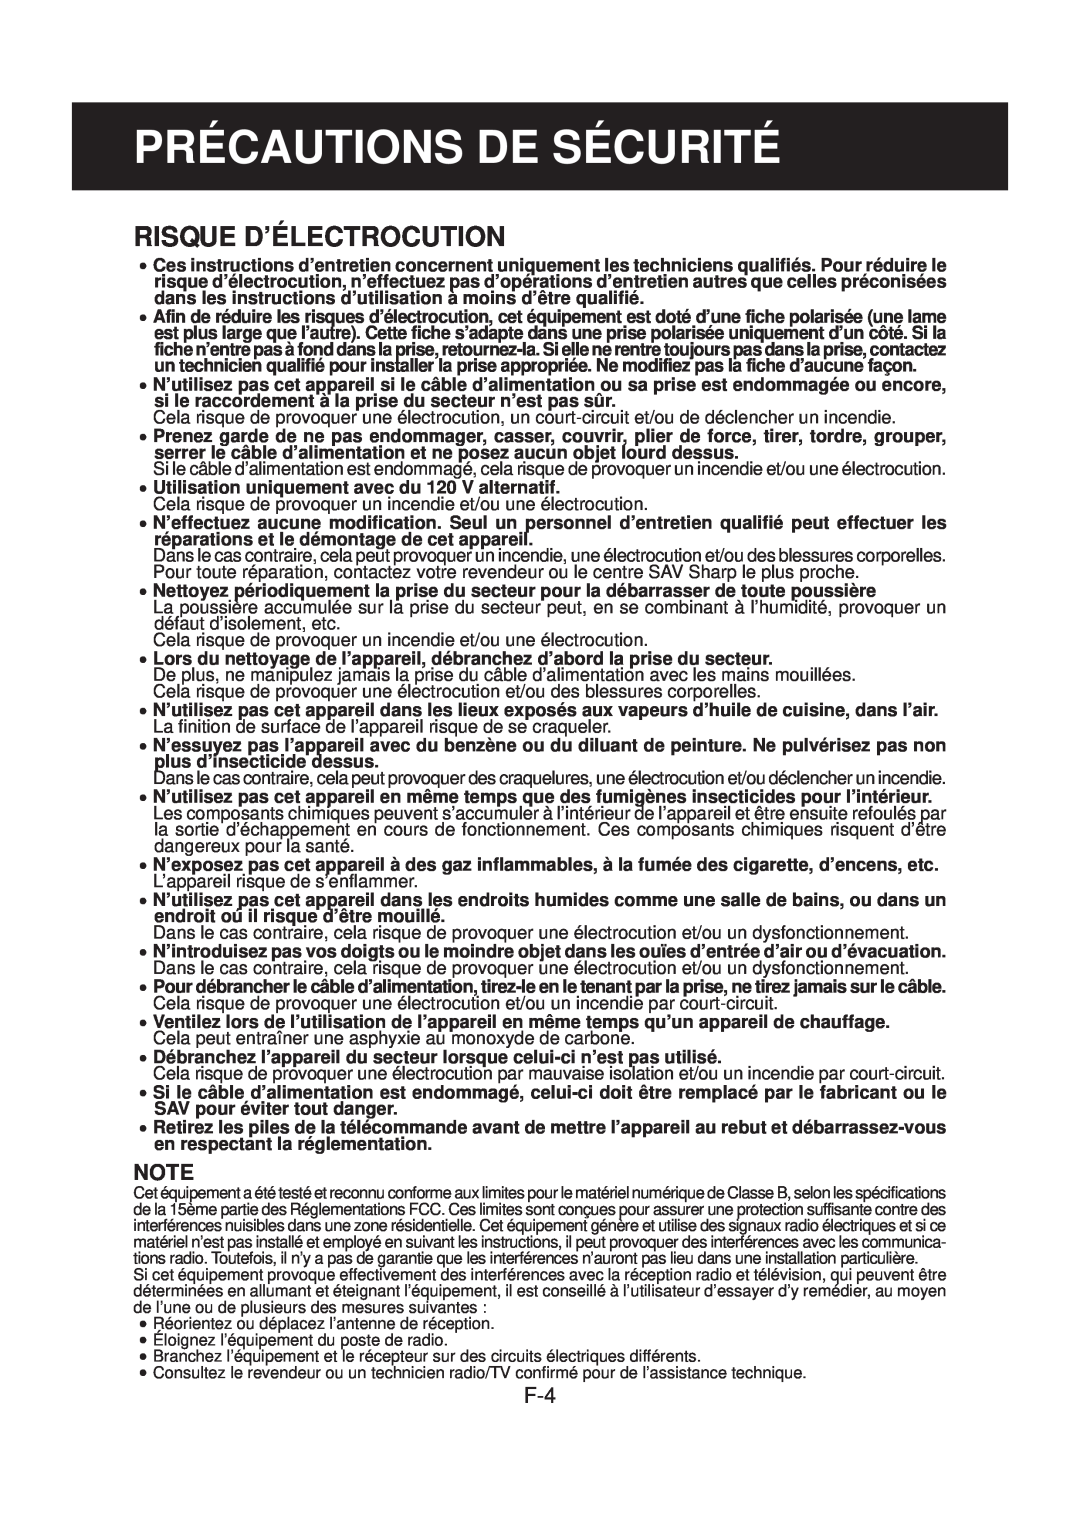 Sharp FP-N40CX operation manual Précautions De Sécurité, Risque D’Électrocution 